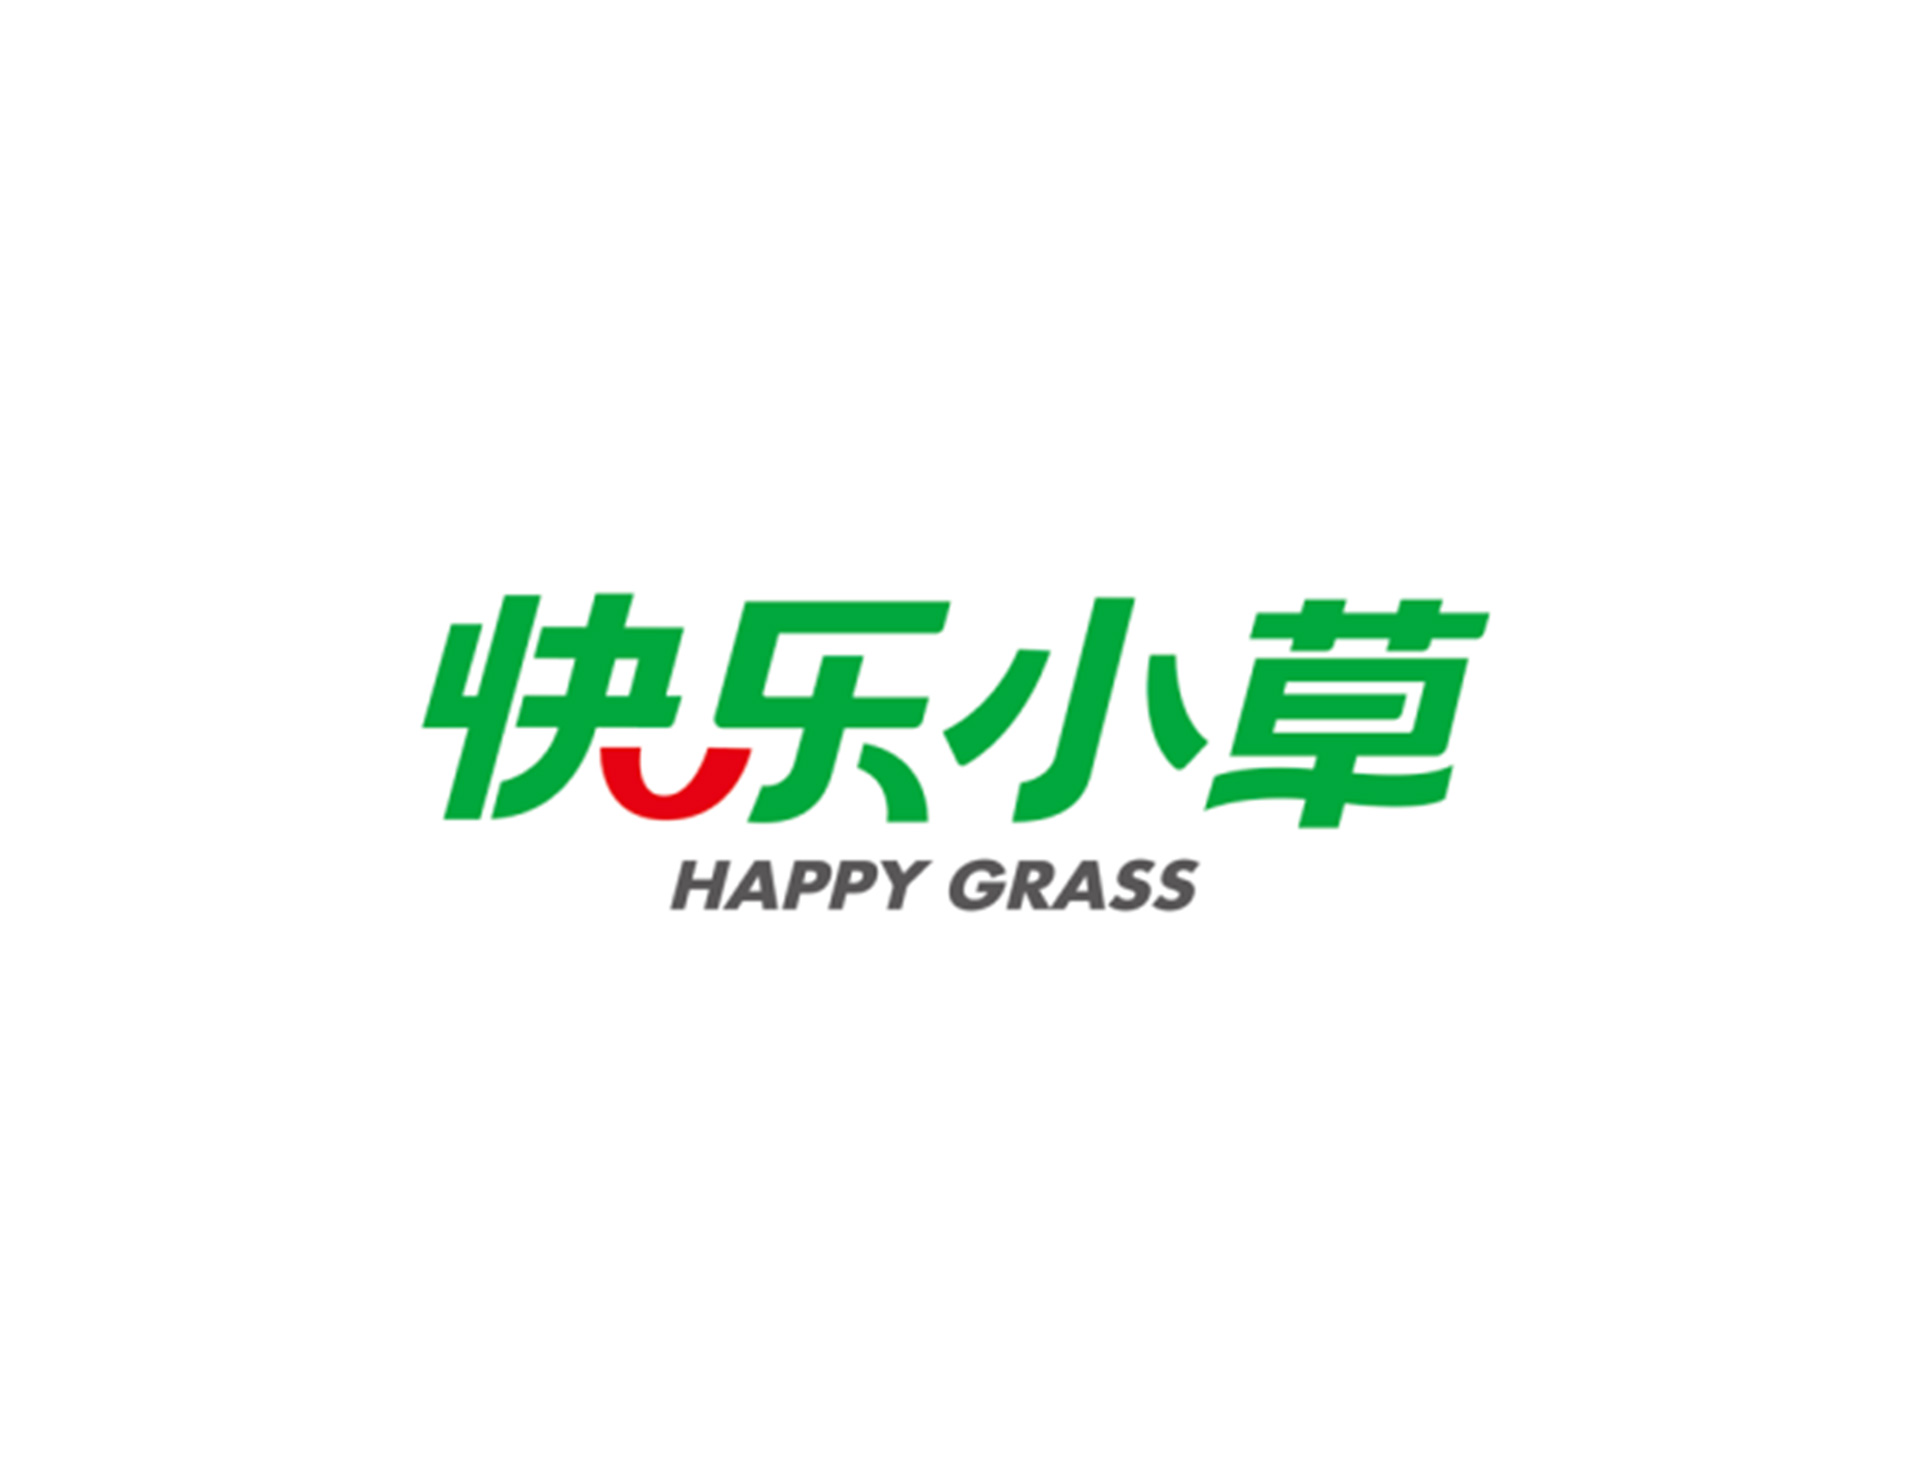 北京快乐小草运动草公司创意以汉字名称配合轻盈飘逸的字体属体和色彩